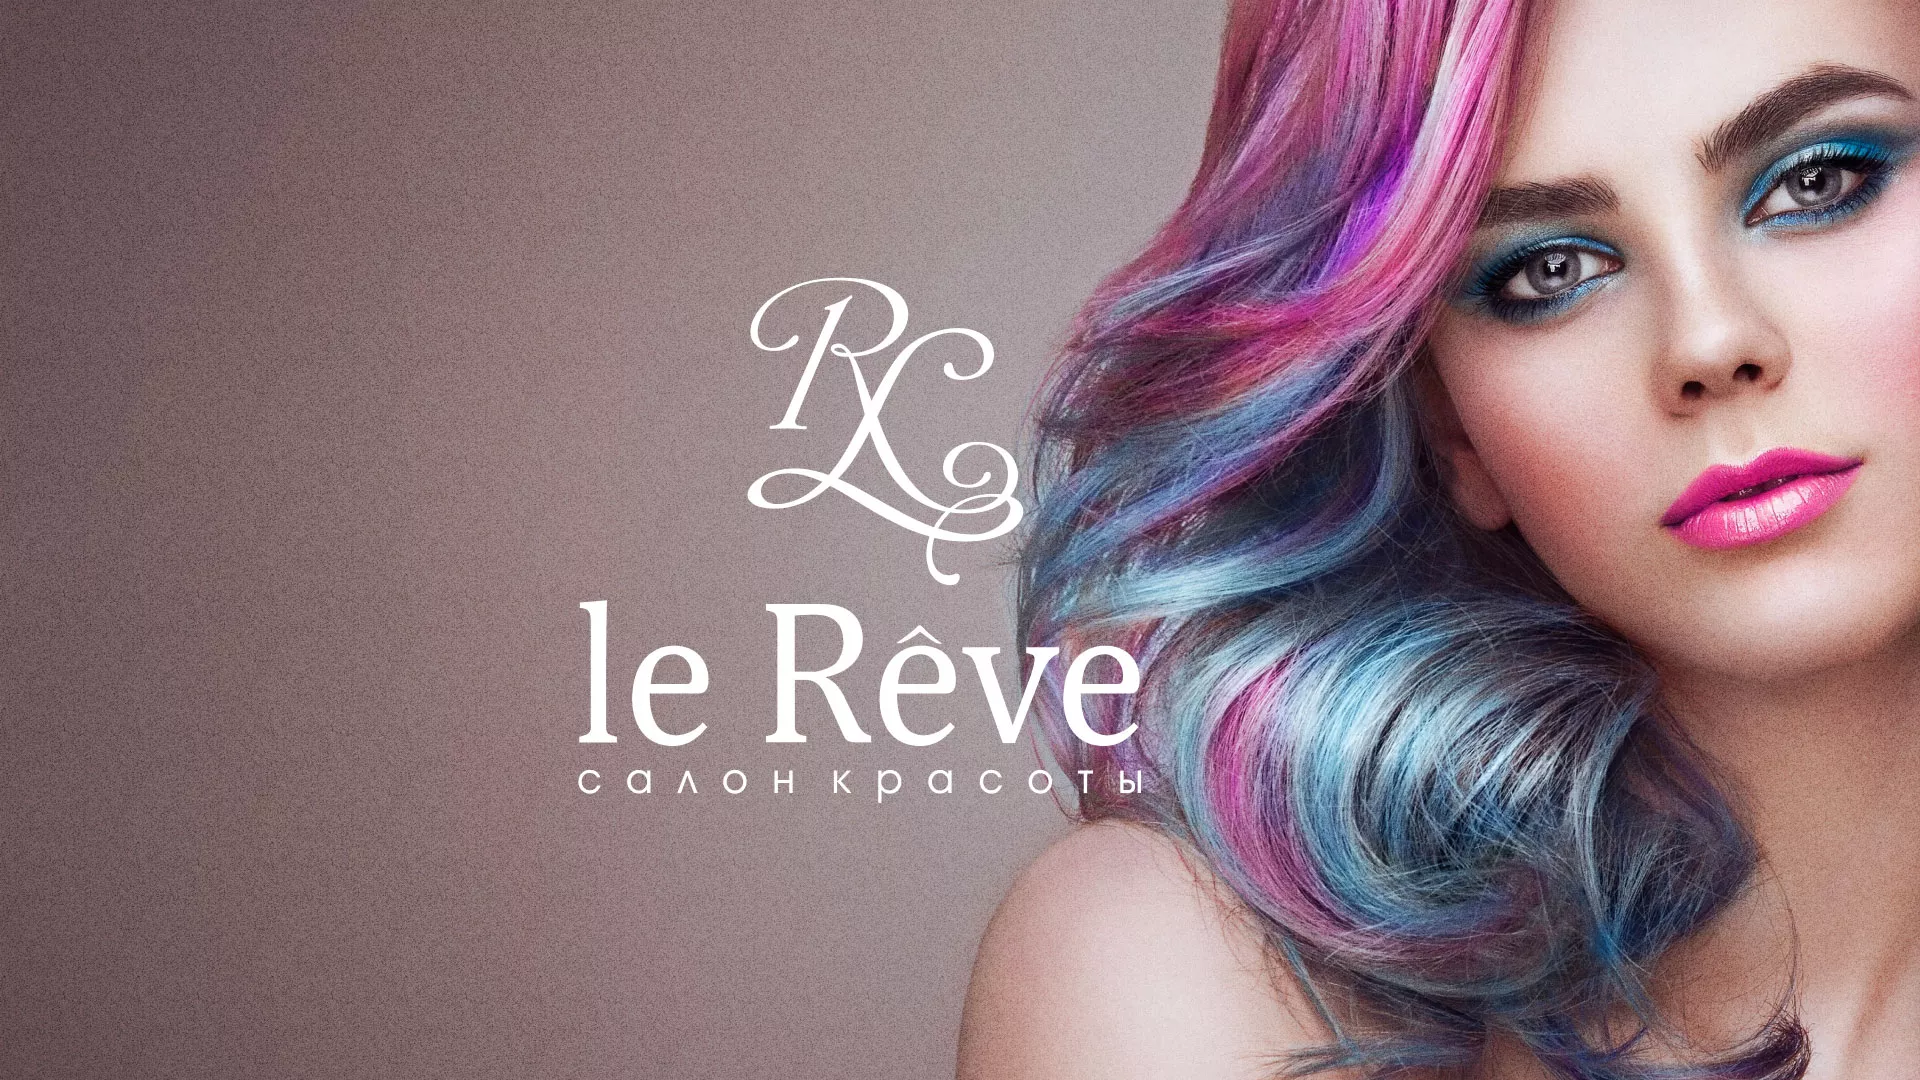 Создание сайта для салона красоты «Le Reve» в Свободном